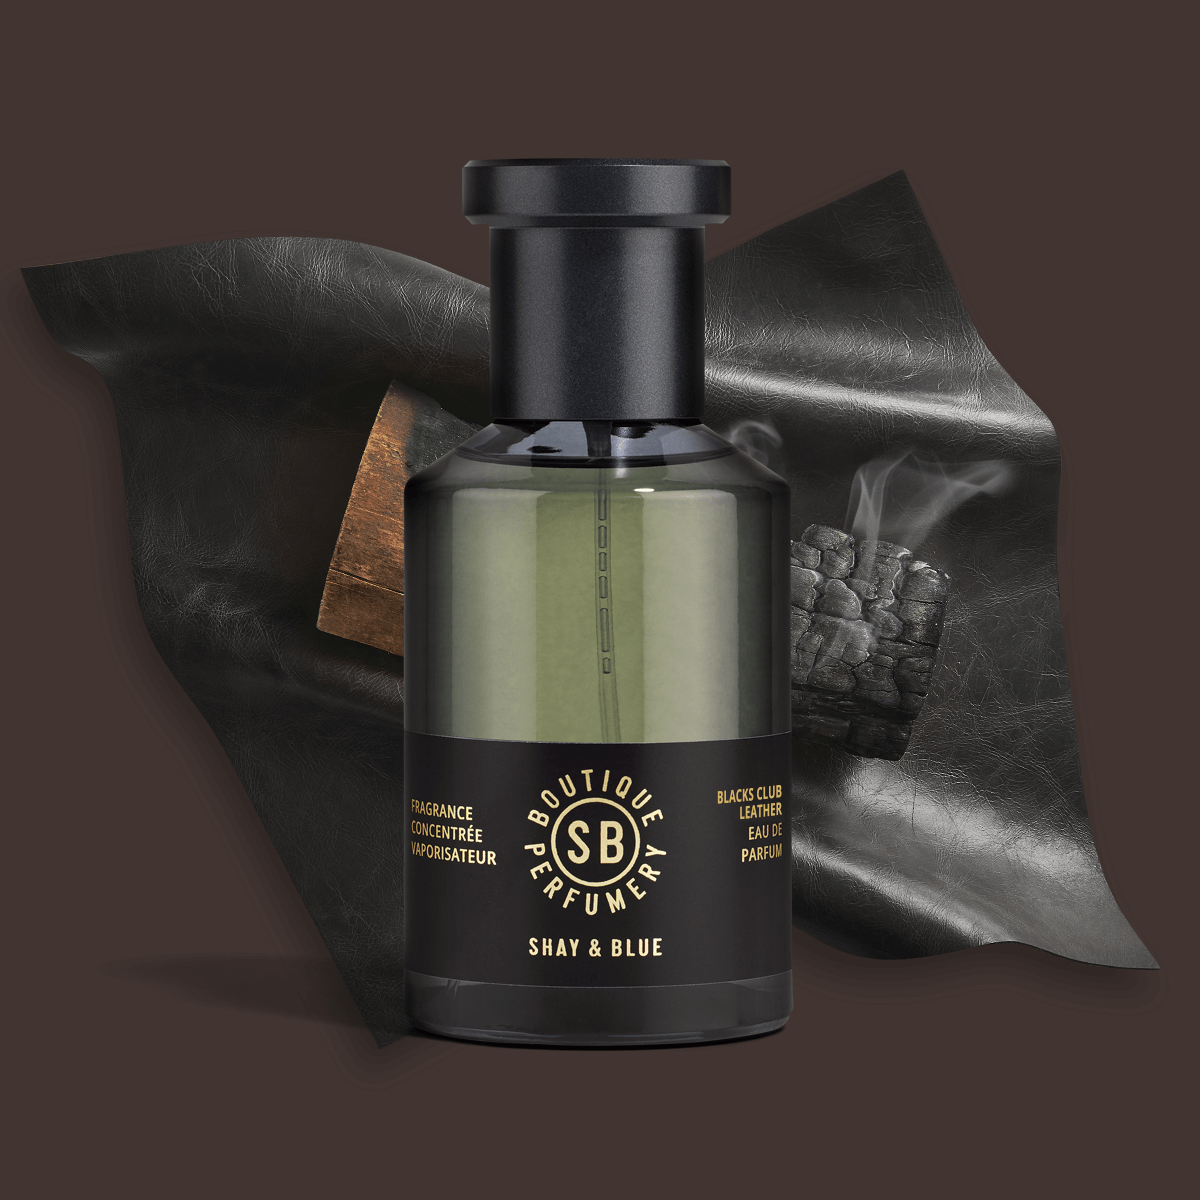 Blacks Club Leather Fragrance Concentrate 100ml | Rico aroma de cuero inglés, leña y un suave brandy. | Fragancia limpia para todos los sexos | Shay & Blue